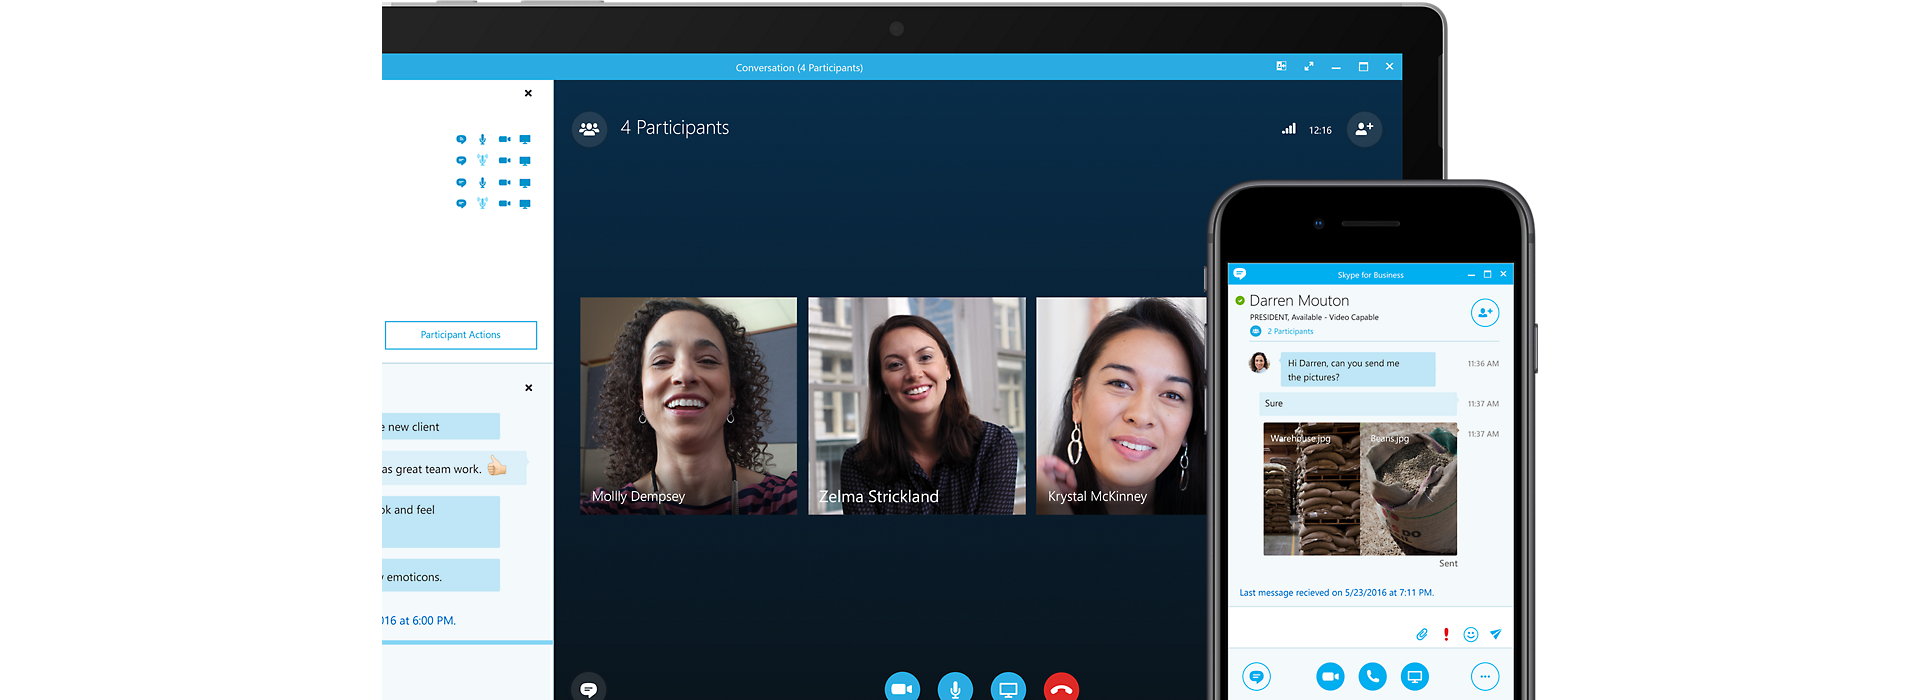 Skype for Business のオンライン会議を表示するデバイスの画面と、同じ会議に接続しているモバイル デバイスの画面が重なっています